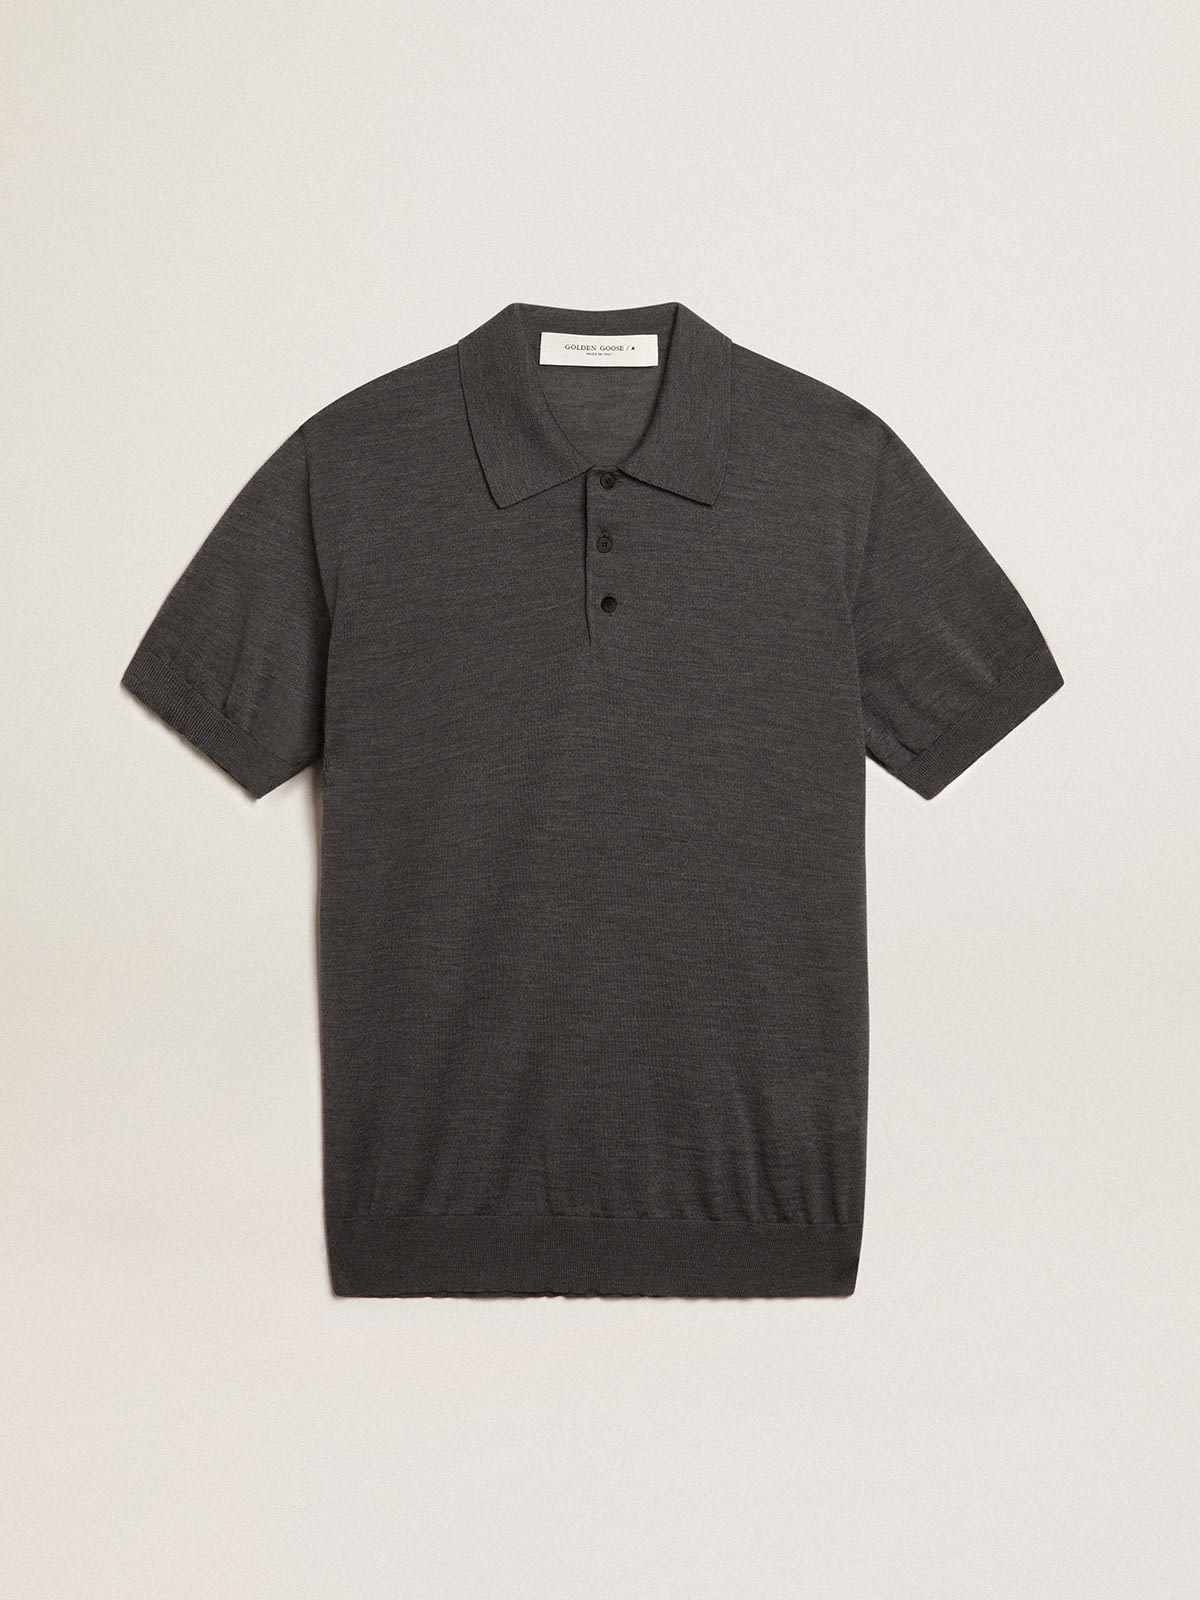 Golden Goose - Men’s short-sleeved polo shirt in gray merino wool in 